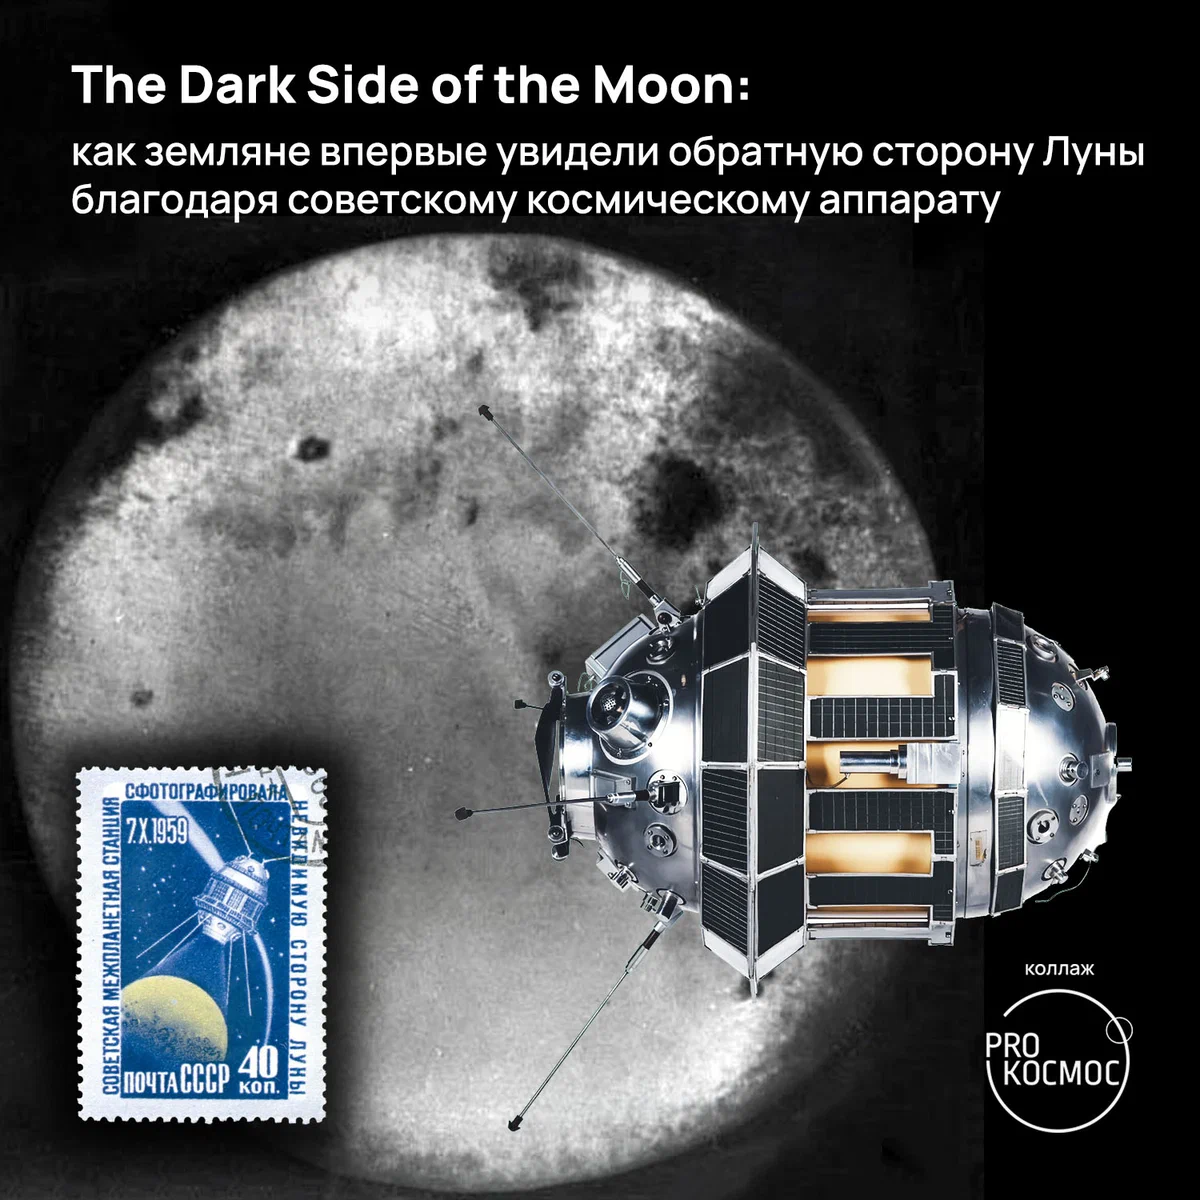 The Dark Side of the Moon: как земляне впервые увидели обратную сторону Луны благодаря советскому космическому аппарату height=1200px width=1200px